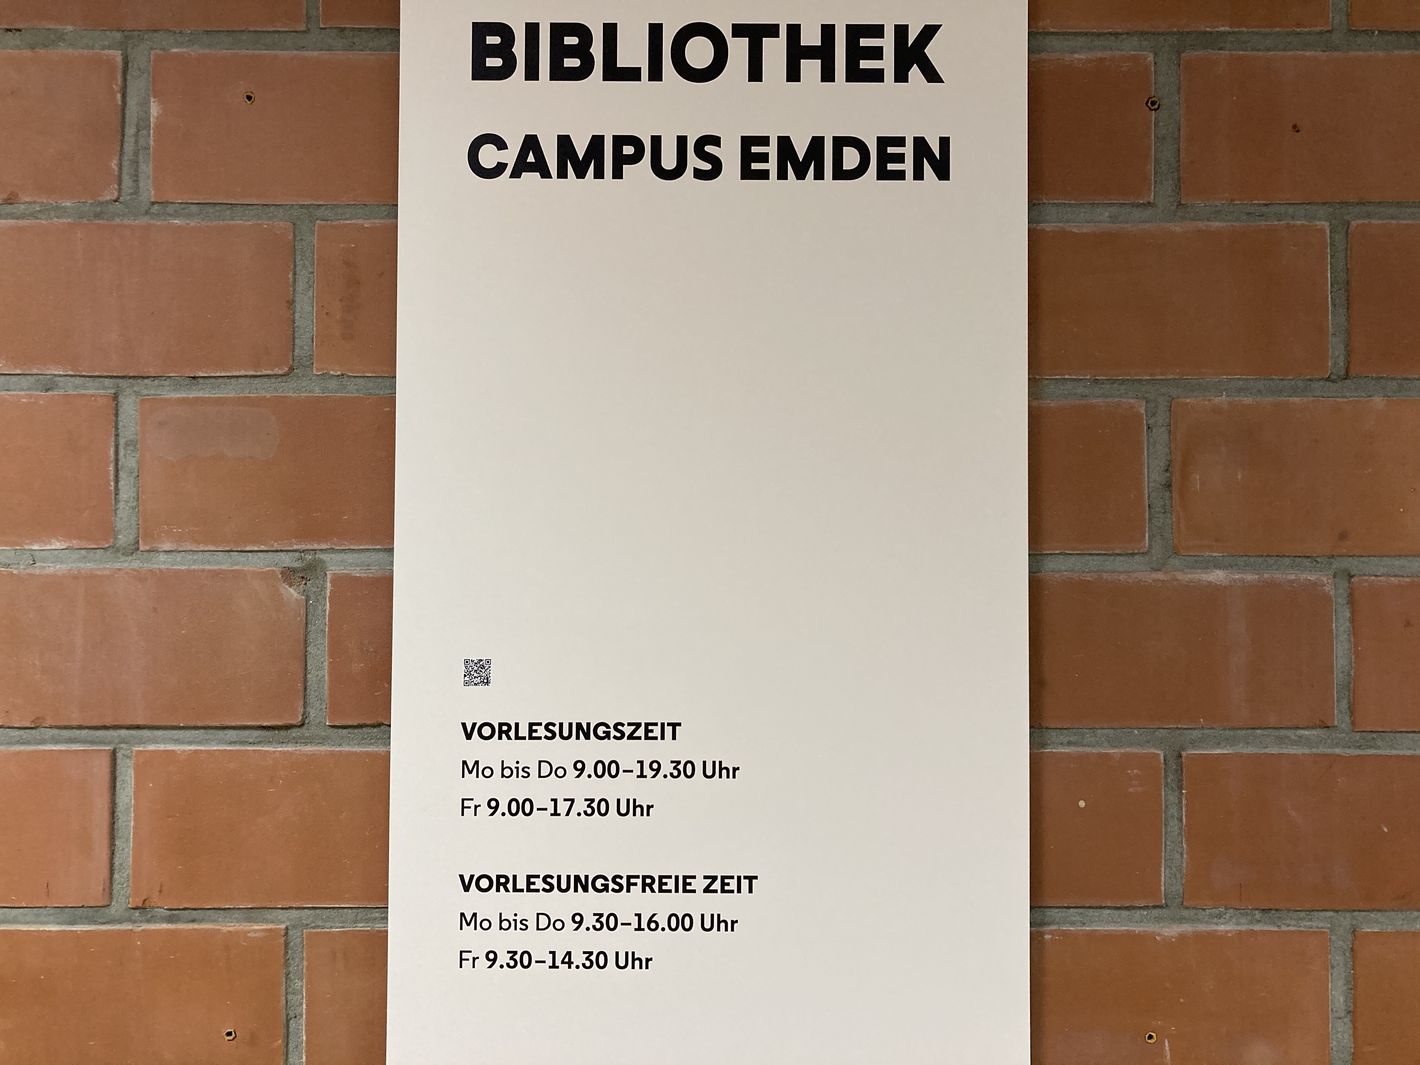 Öffnungszeiten der Bibliothek Emden